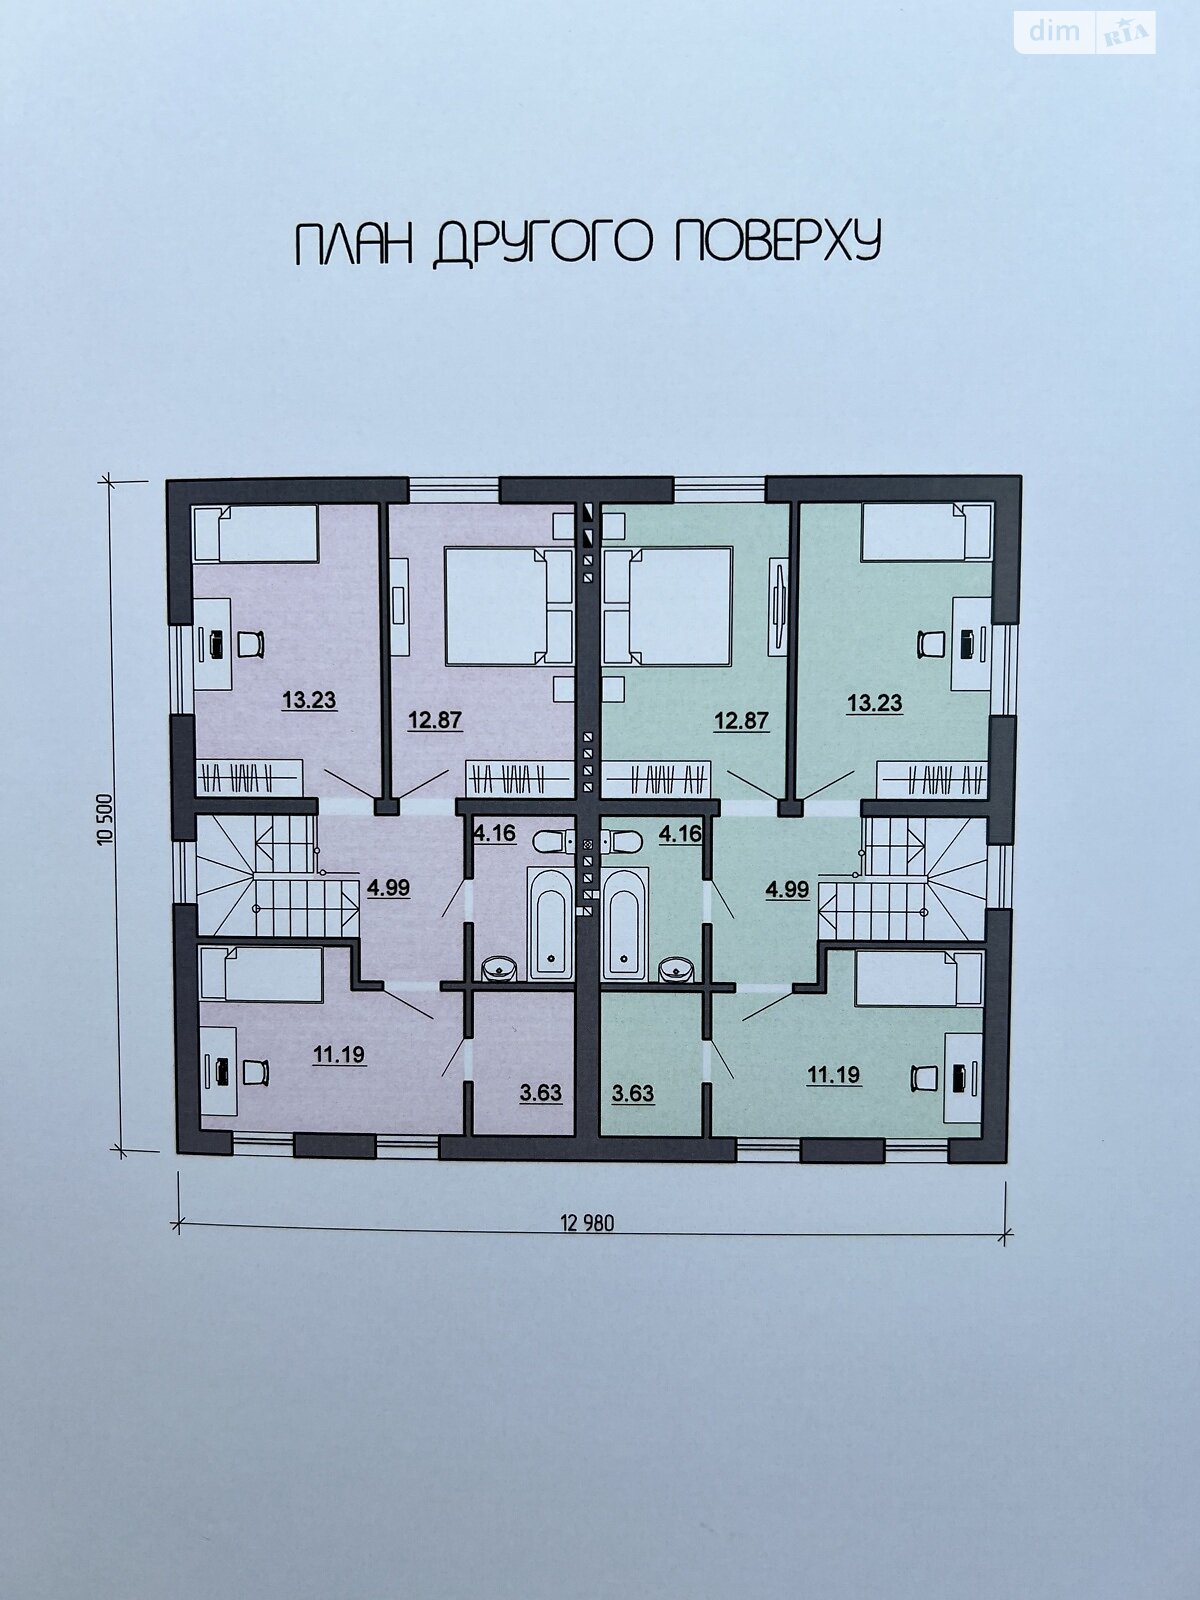 Продаж частини будинку в Білій Криниці, вулиця Вишнева, 4 кімнати фото 1